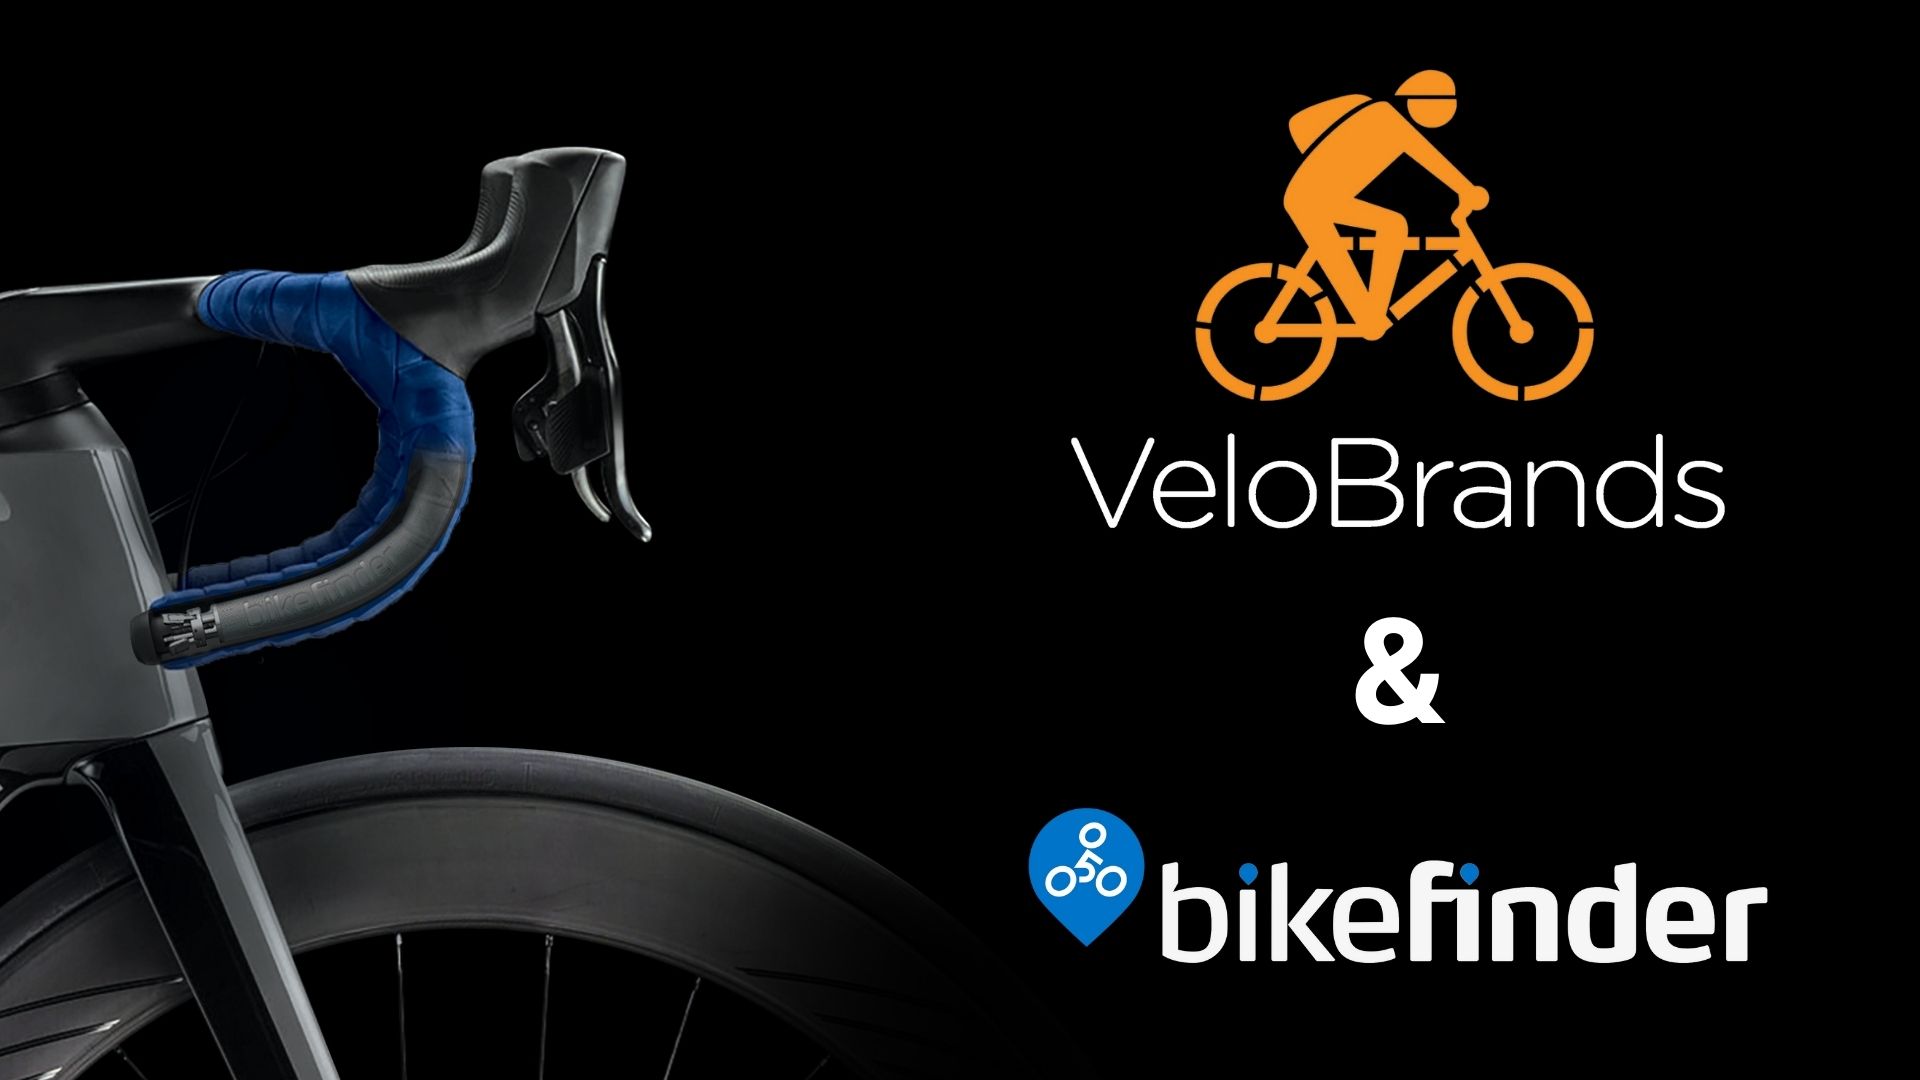 Velobrands & BikeFinder logos